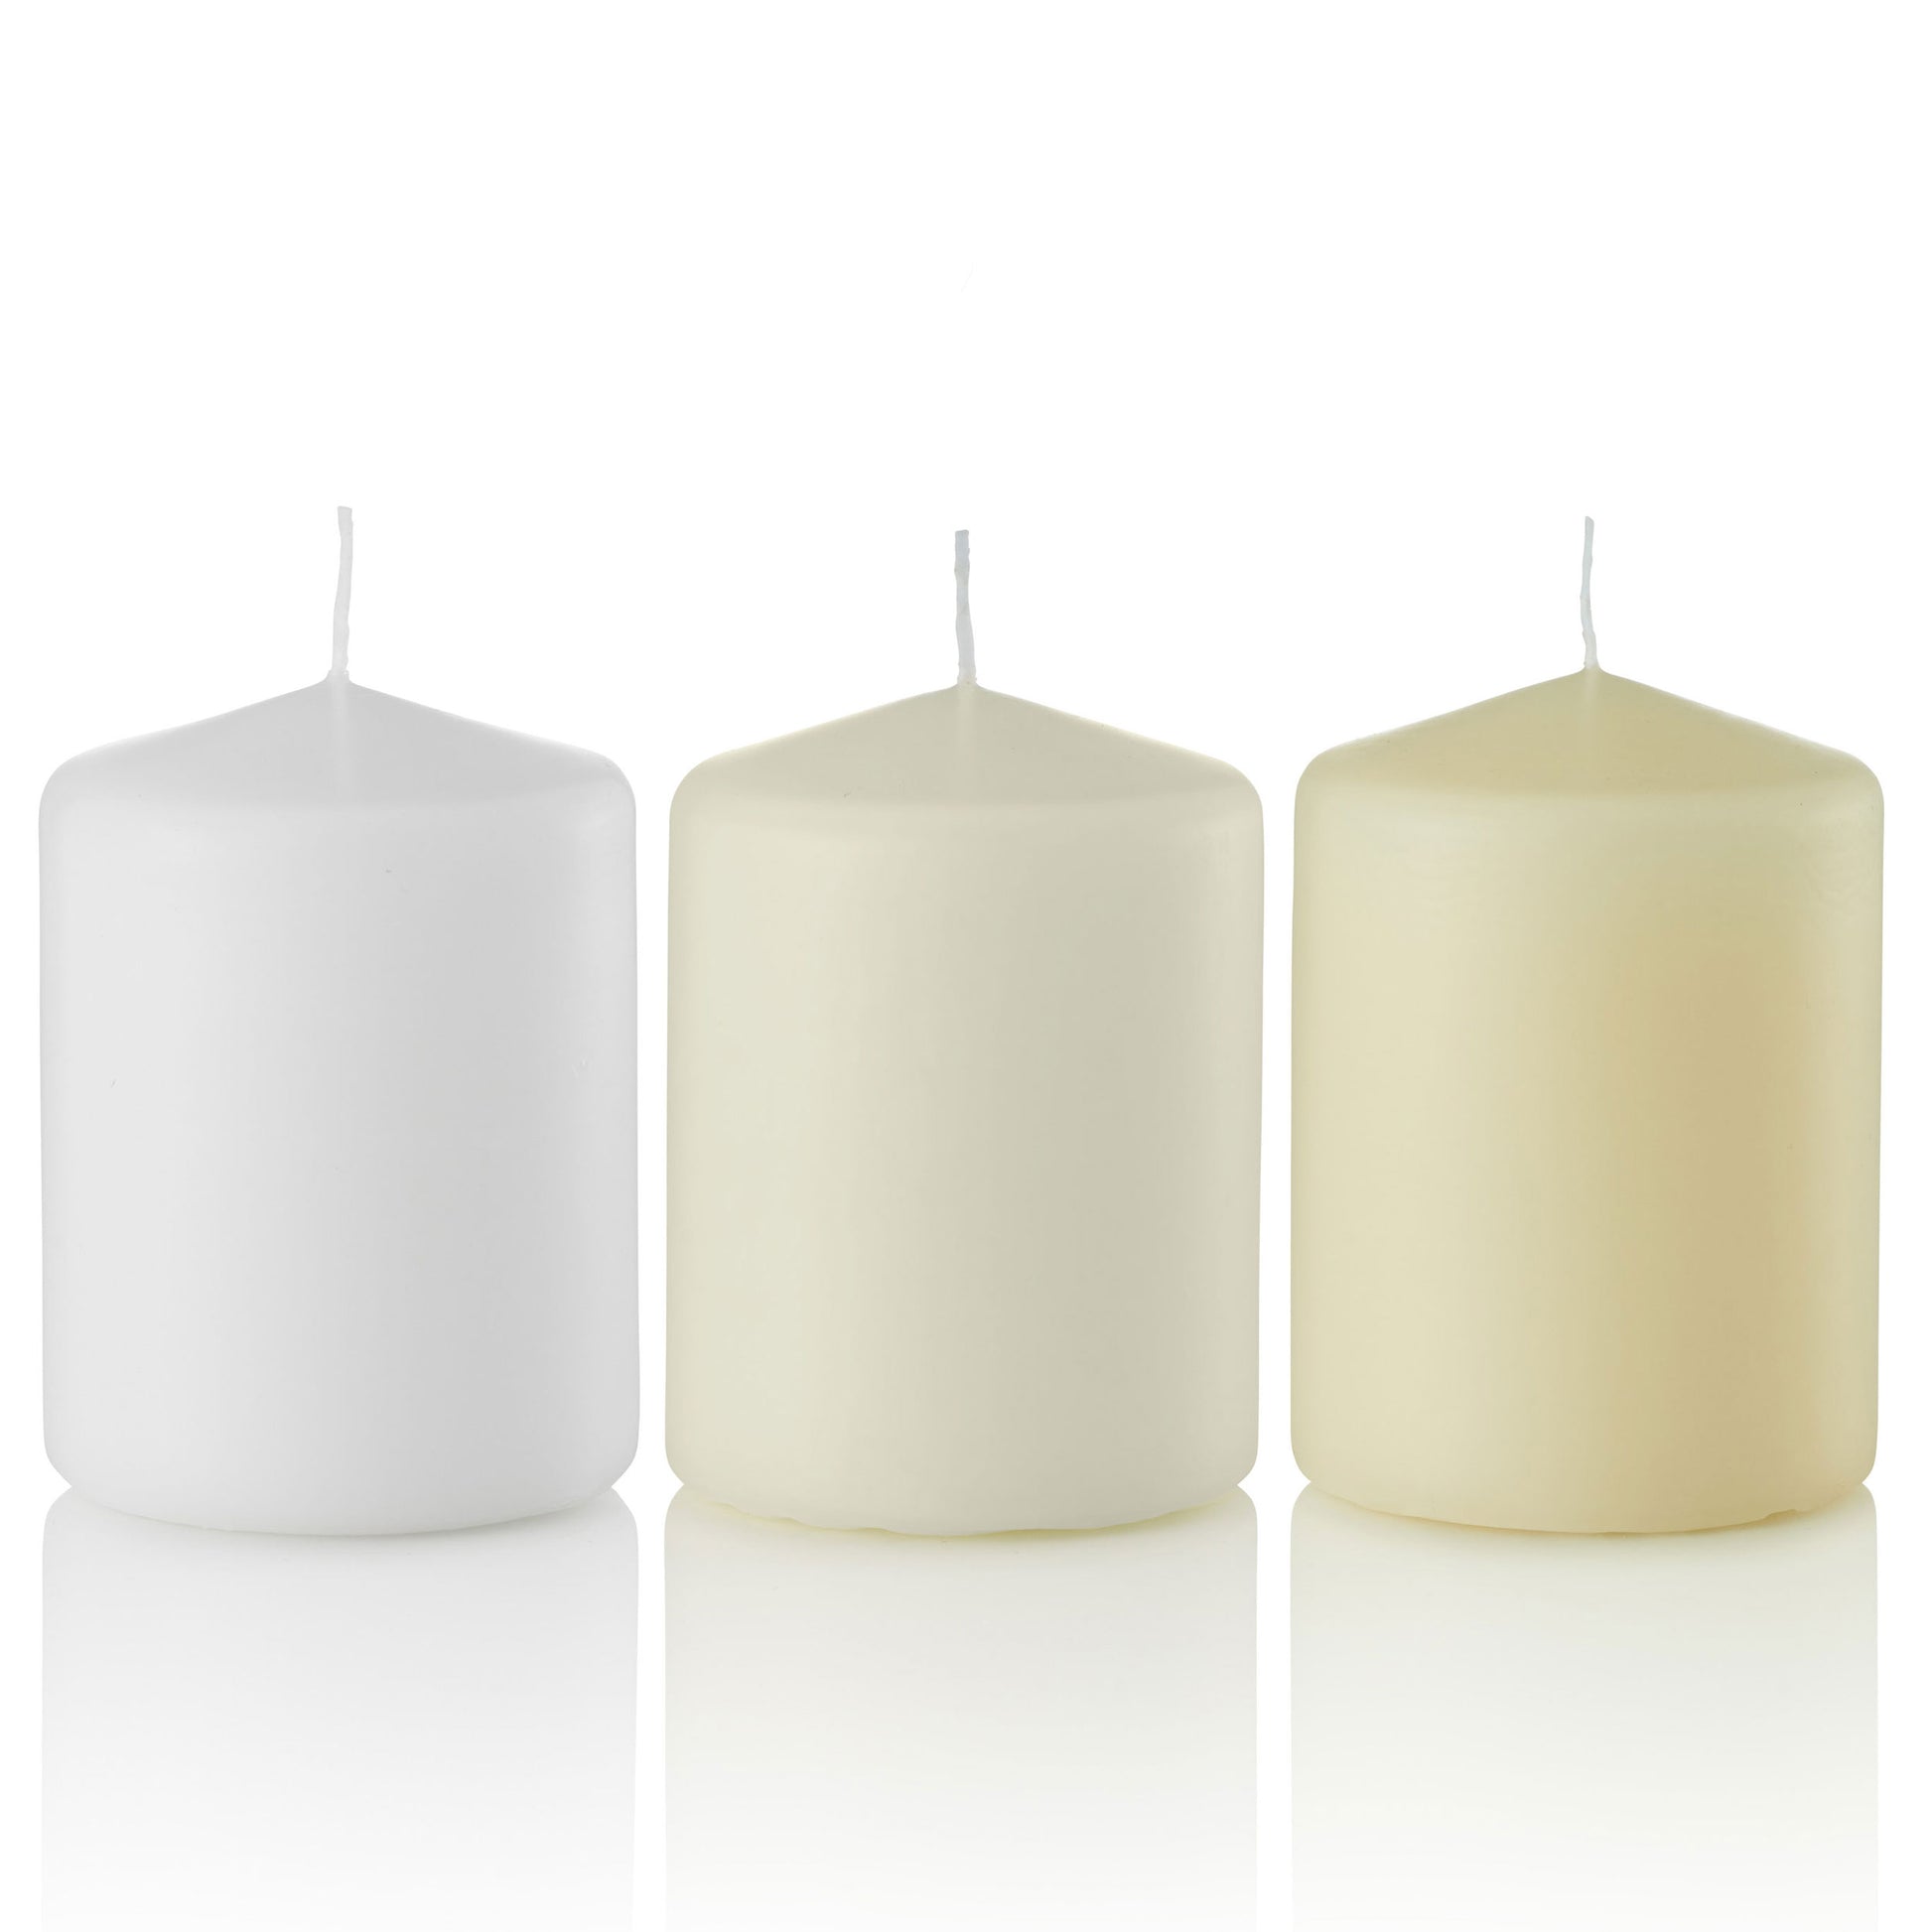 3 x 4 Pillar Candles, Unscented, Bulk Set of 12-pillar candles-TableTopLighting.com